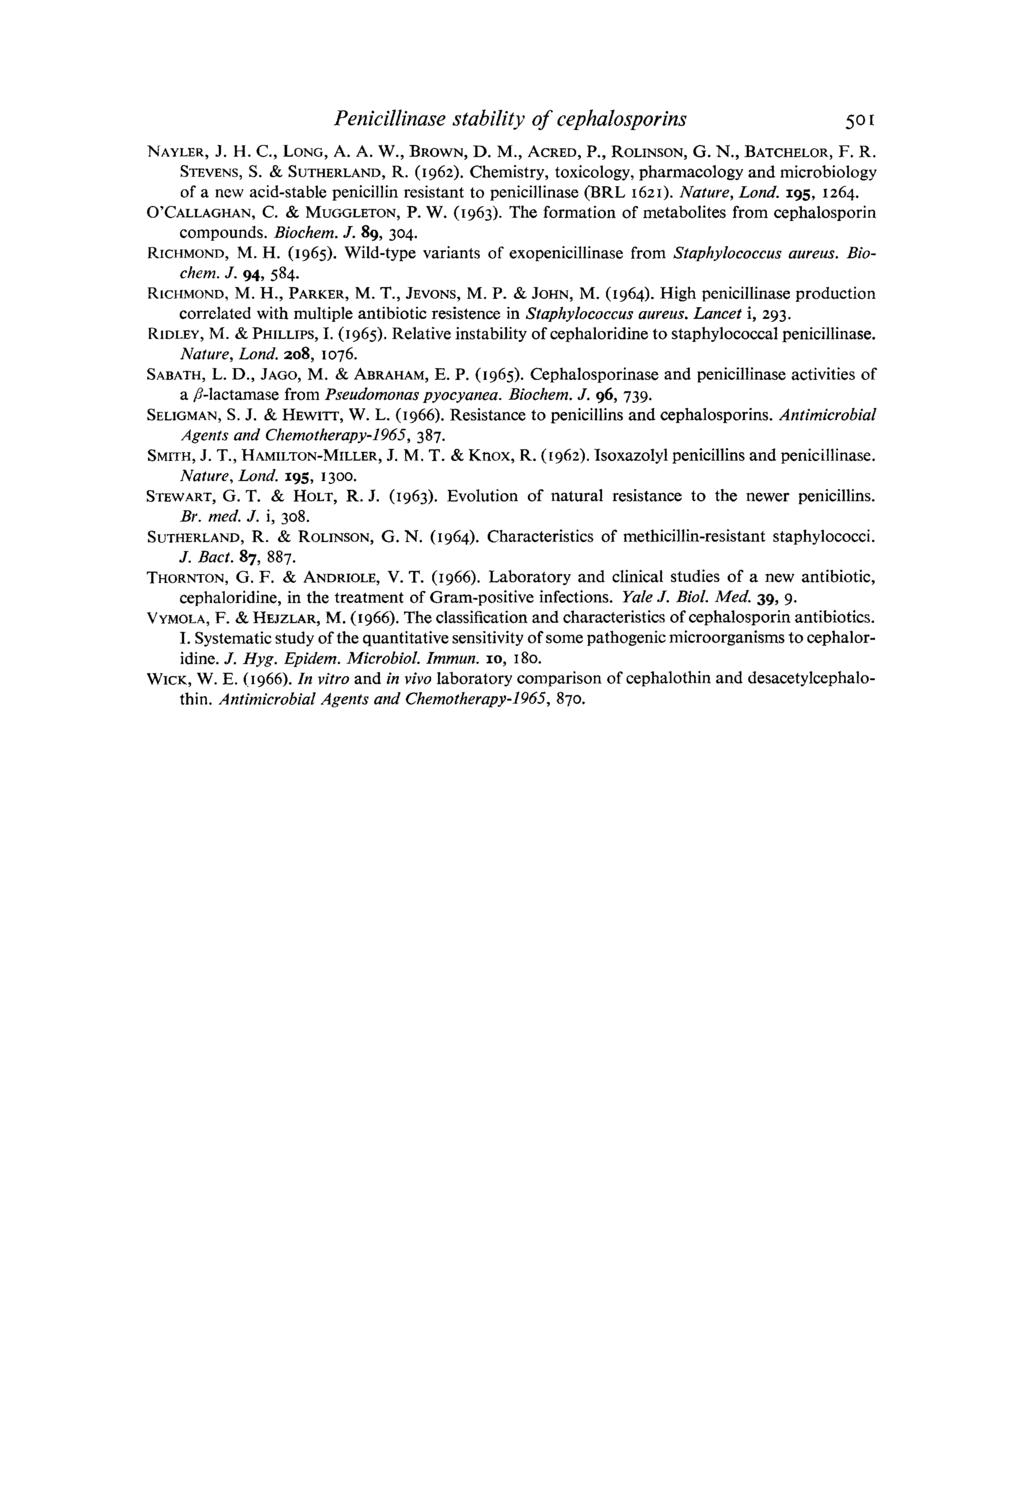 Pen icillinase stability of cep halospor ins NAYLER, J. H. C., LONG, A. A. W., BROWN, D. M., ACRED, P., ROLINSON, G. N., BATCHELOR, F. R. STEVENS, S. & SUTHERLAND, R. (I 962).